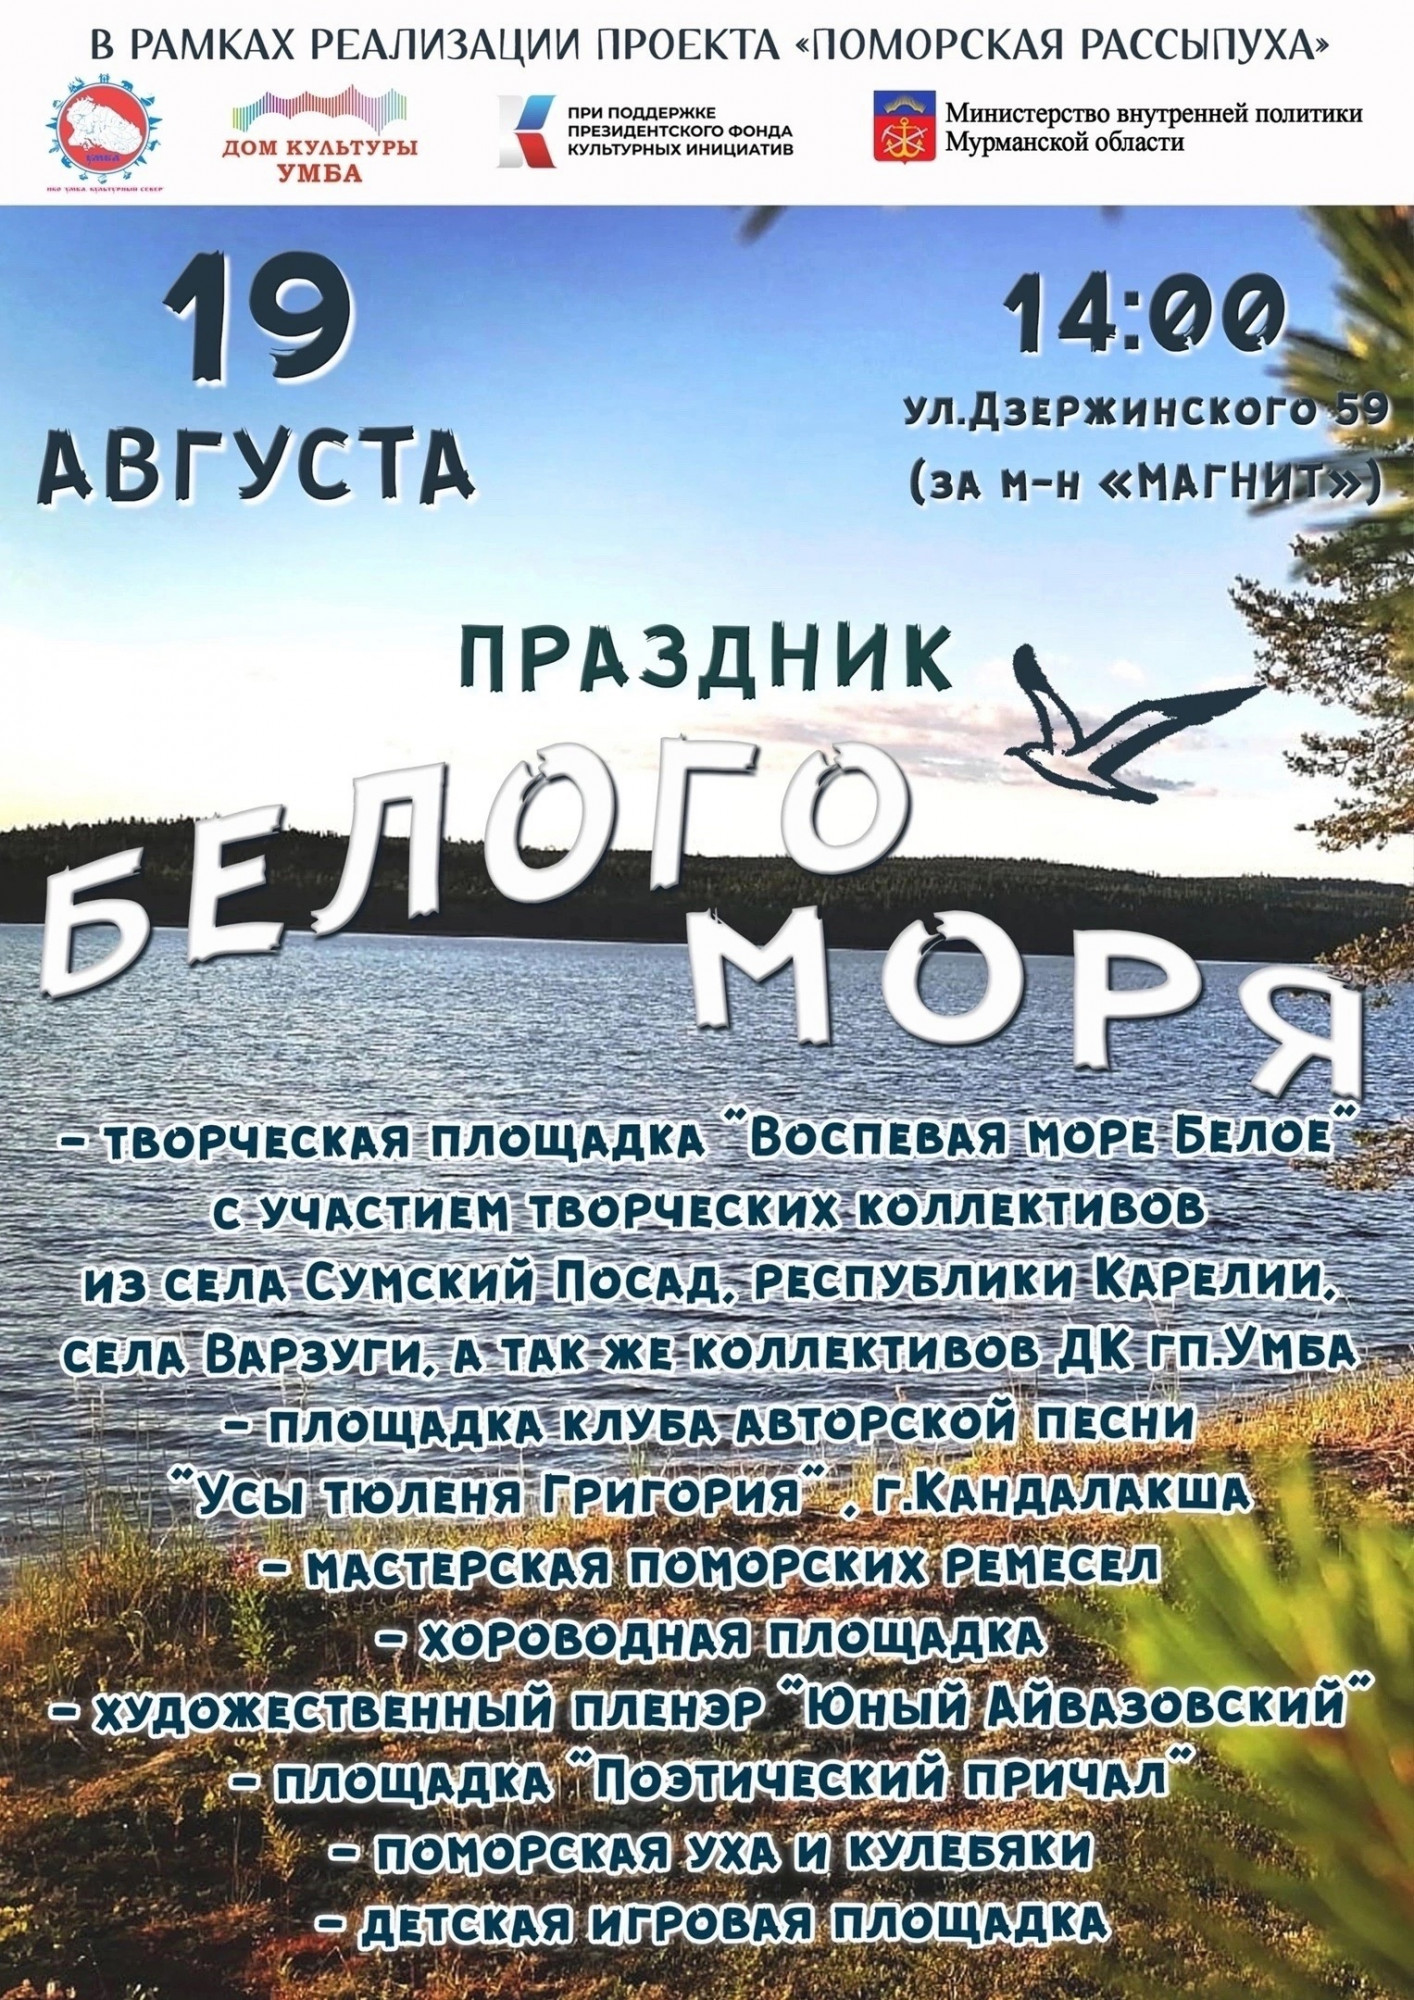 Праздник Белого моря готовятся отметить в Умбе